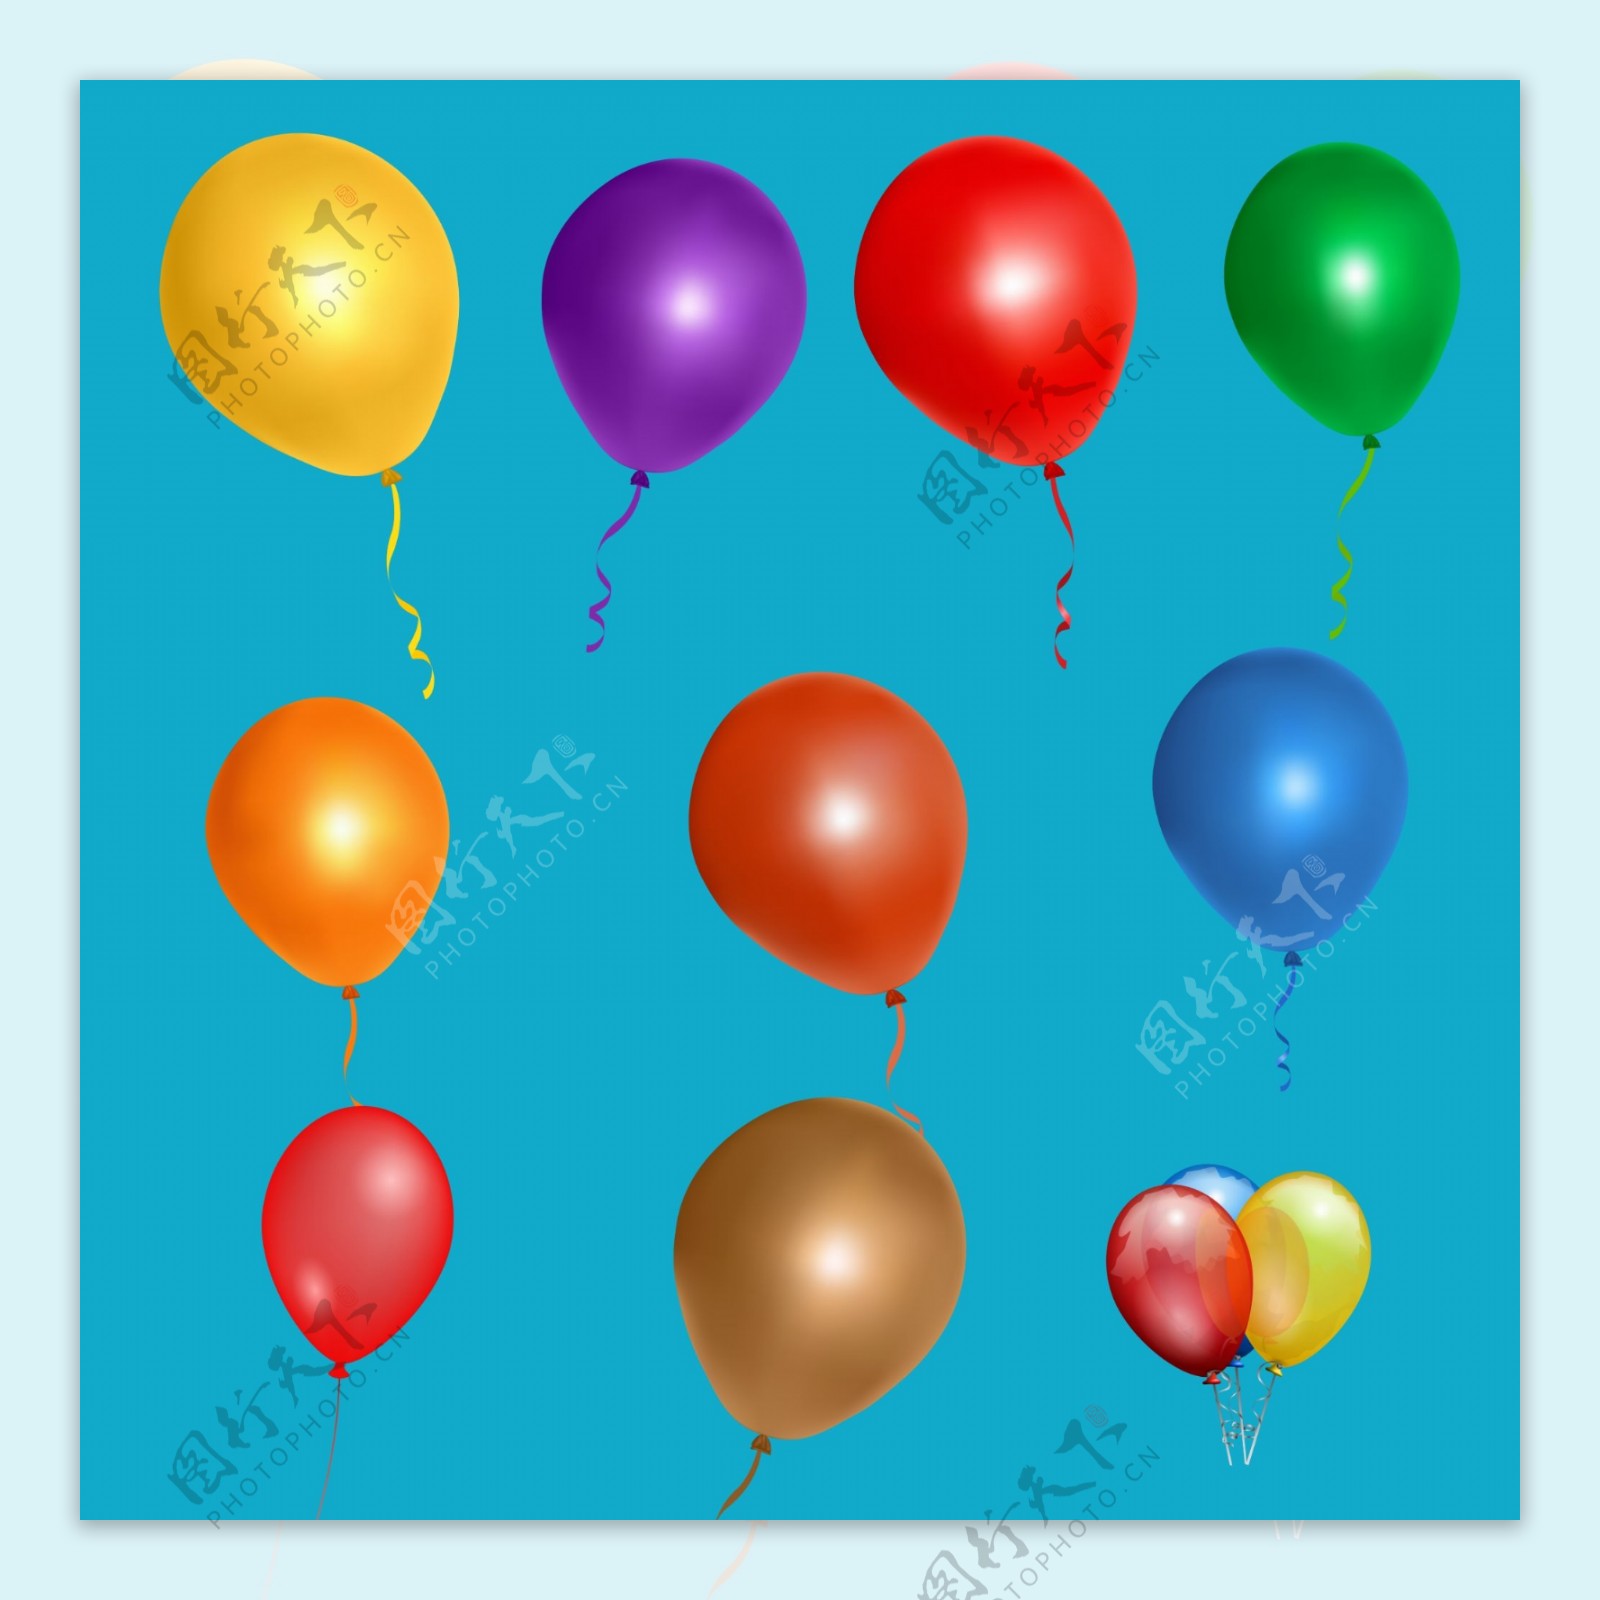 彩色卡通儿童气球装饰